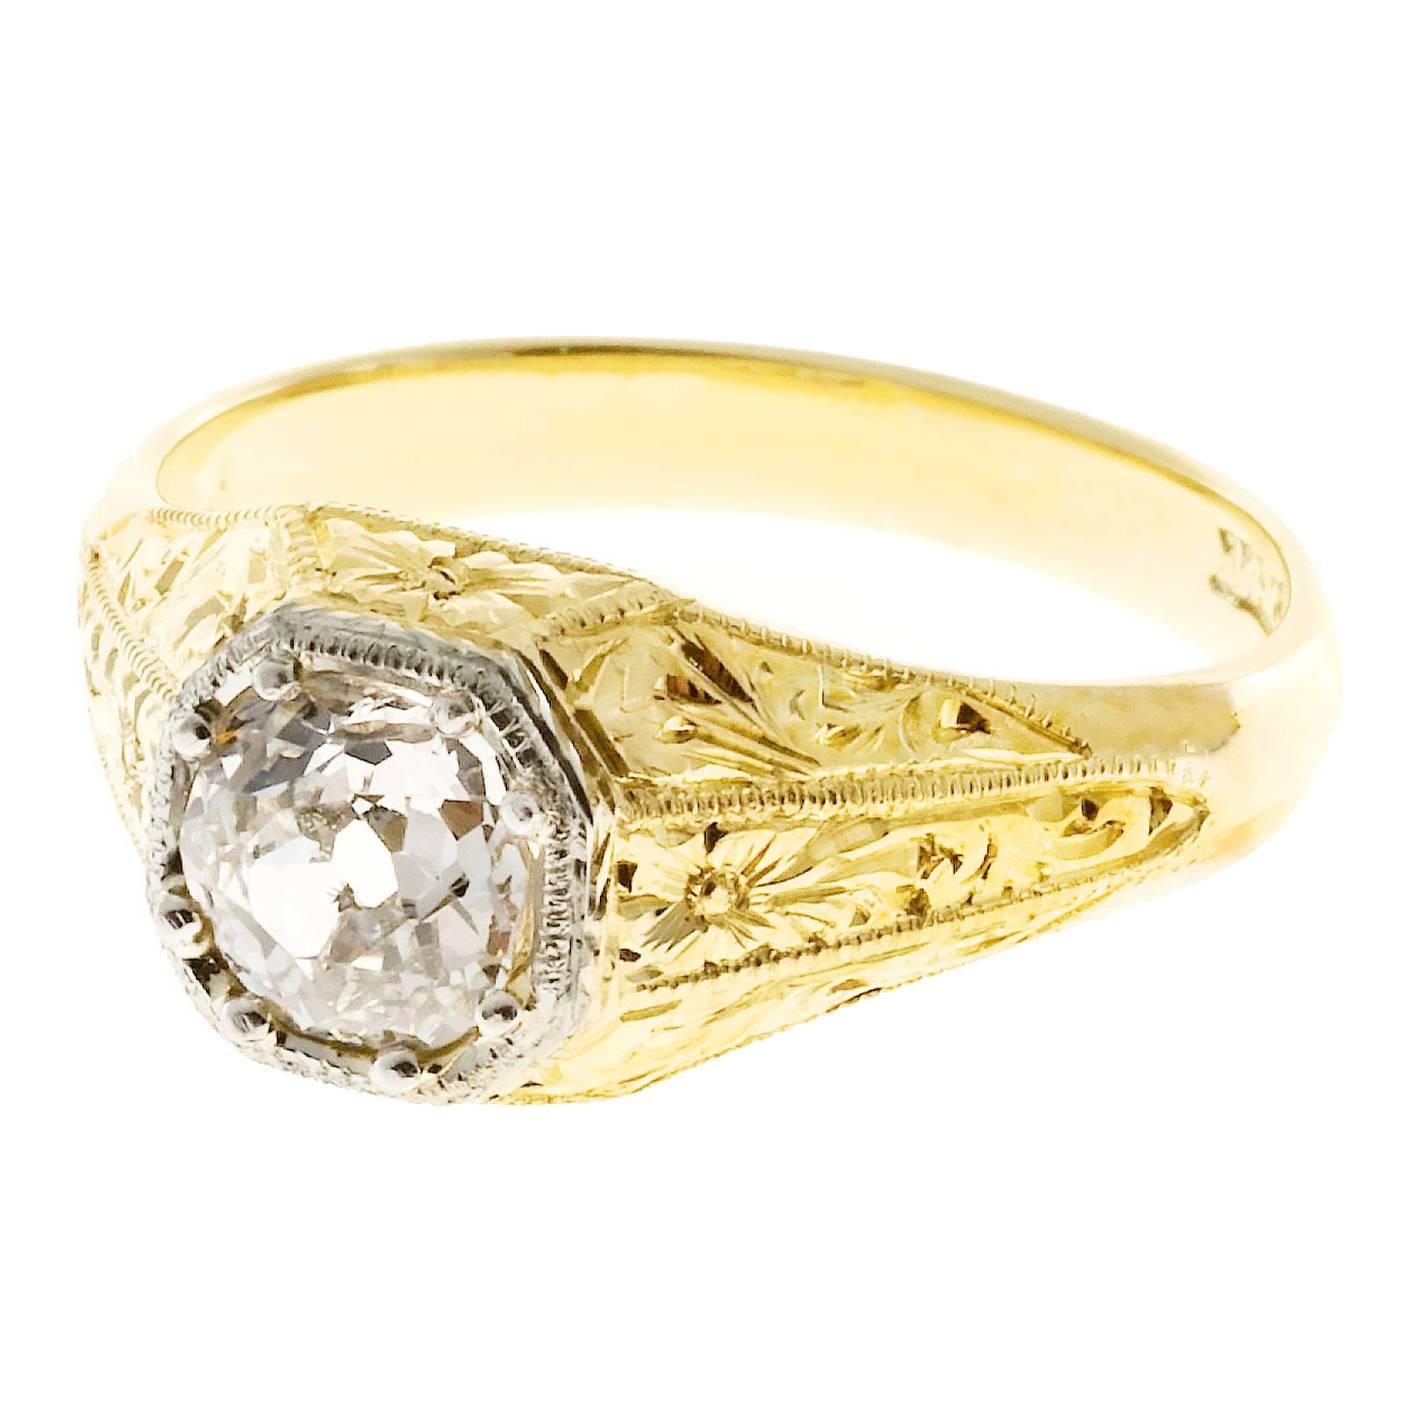 Handmade Men’s Diamond Gold Engraved Ring